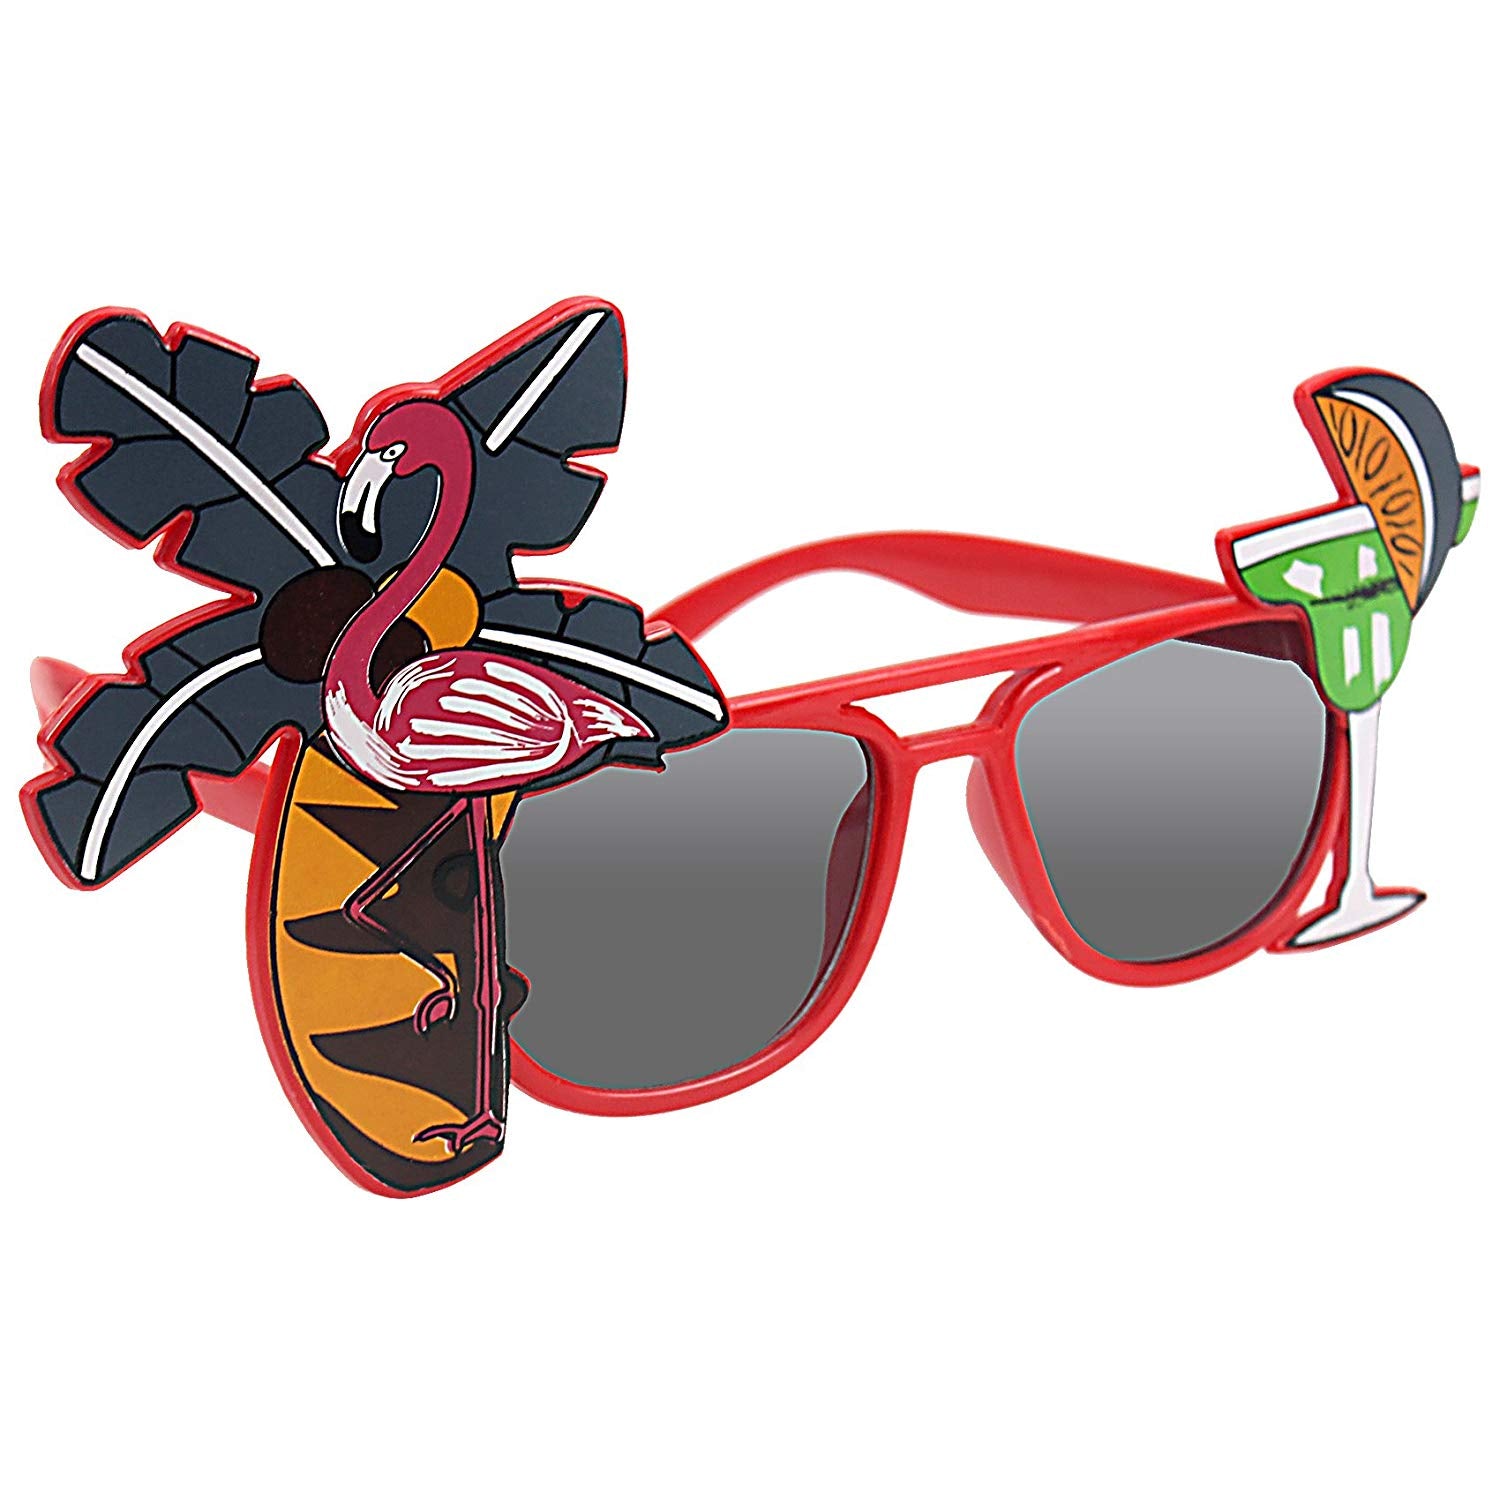 Aloha Luau Party Costume Sunglasses Fun Shades Red